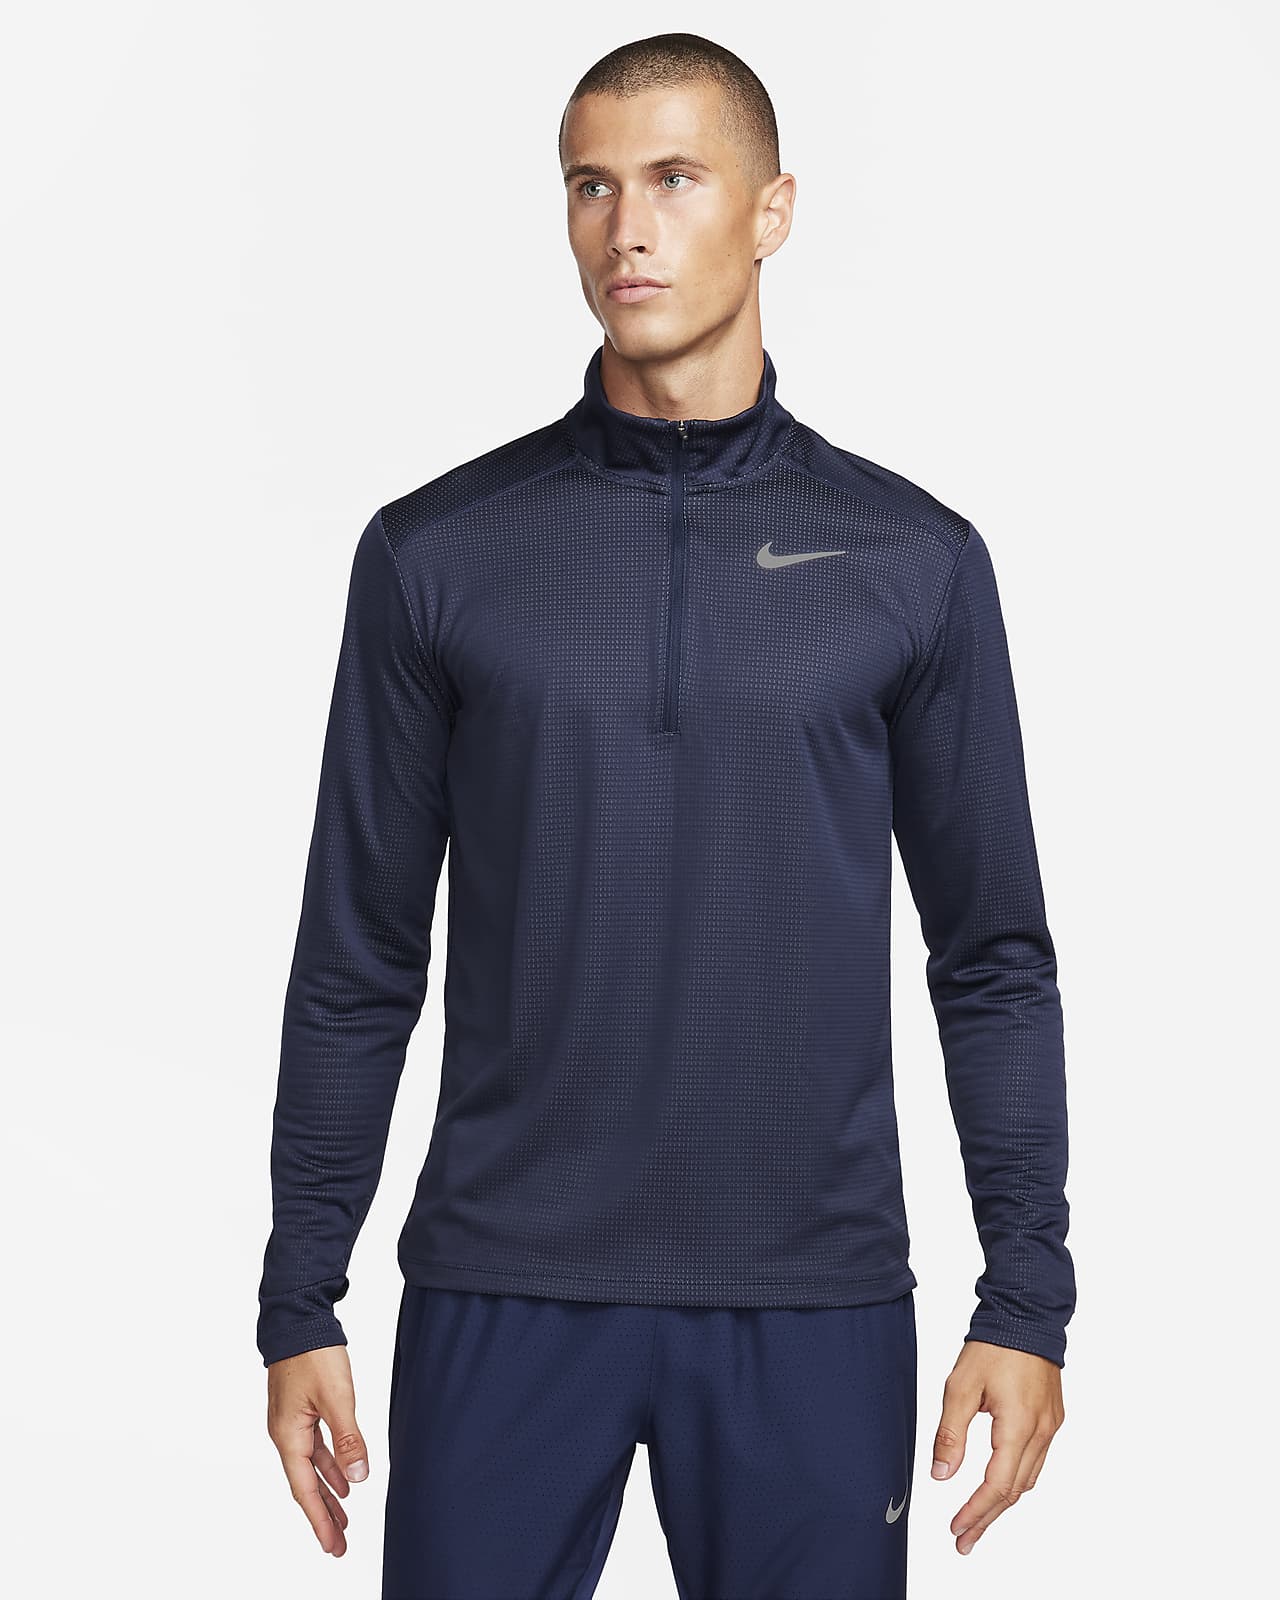 Nike Pacer Men's 1/2-Zip Running Top